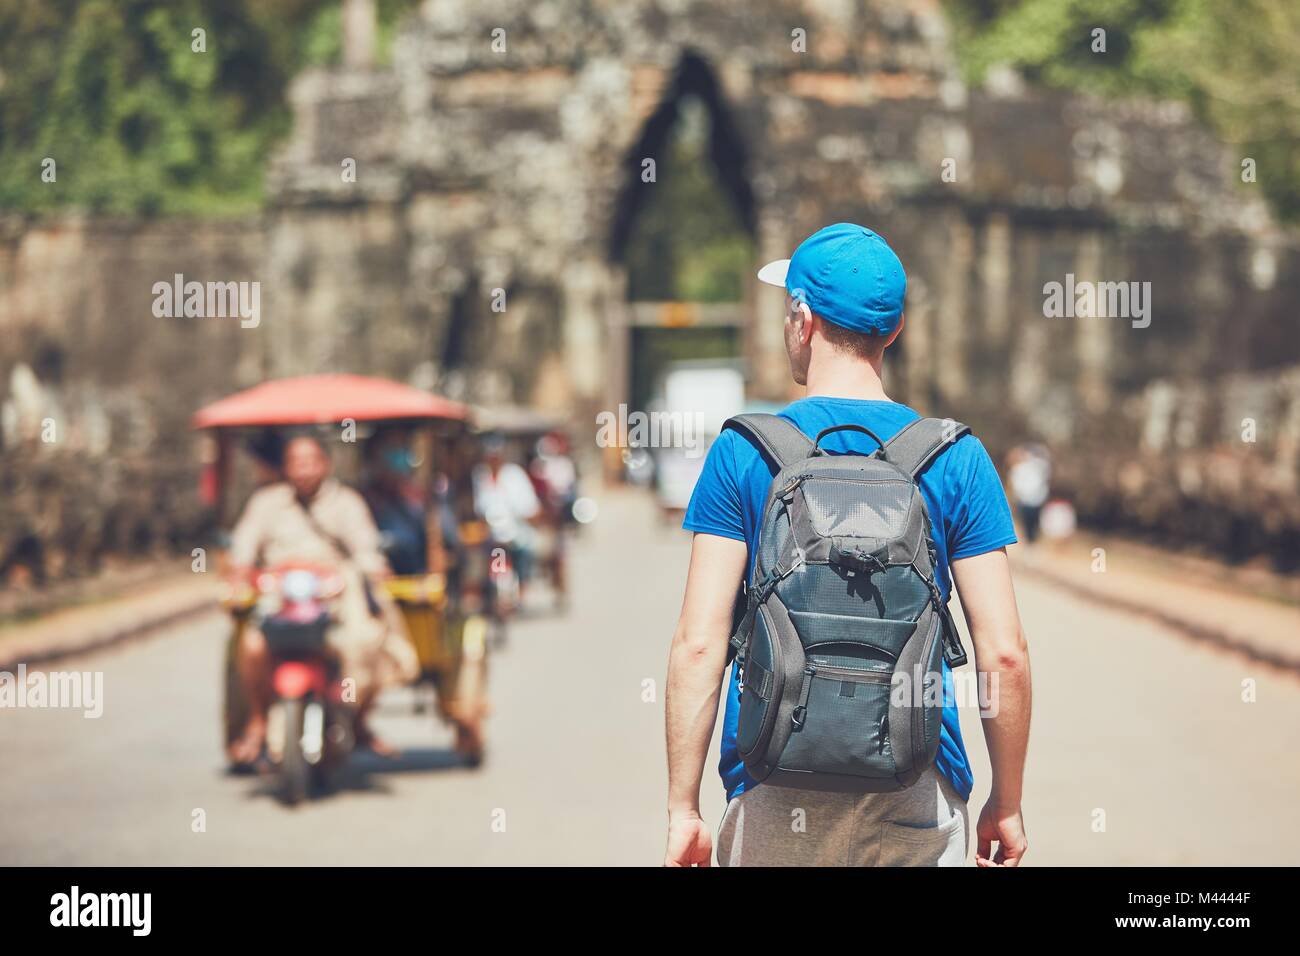 Dans l'ancienne ville. Jeune homme avec sac à dos venant de monuments anciens. Siem Reap, Cambodge Banque D'Images